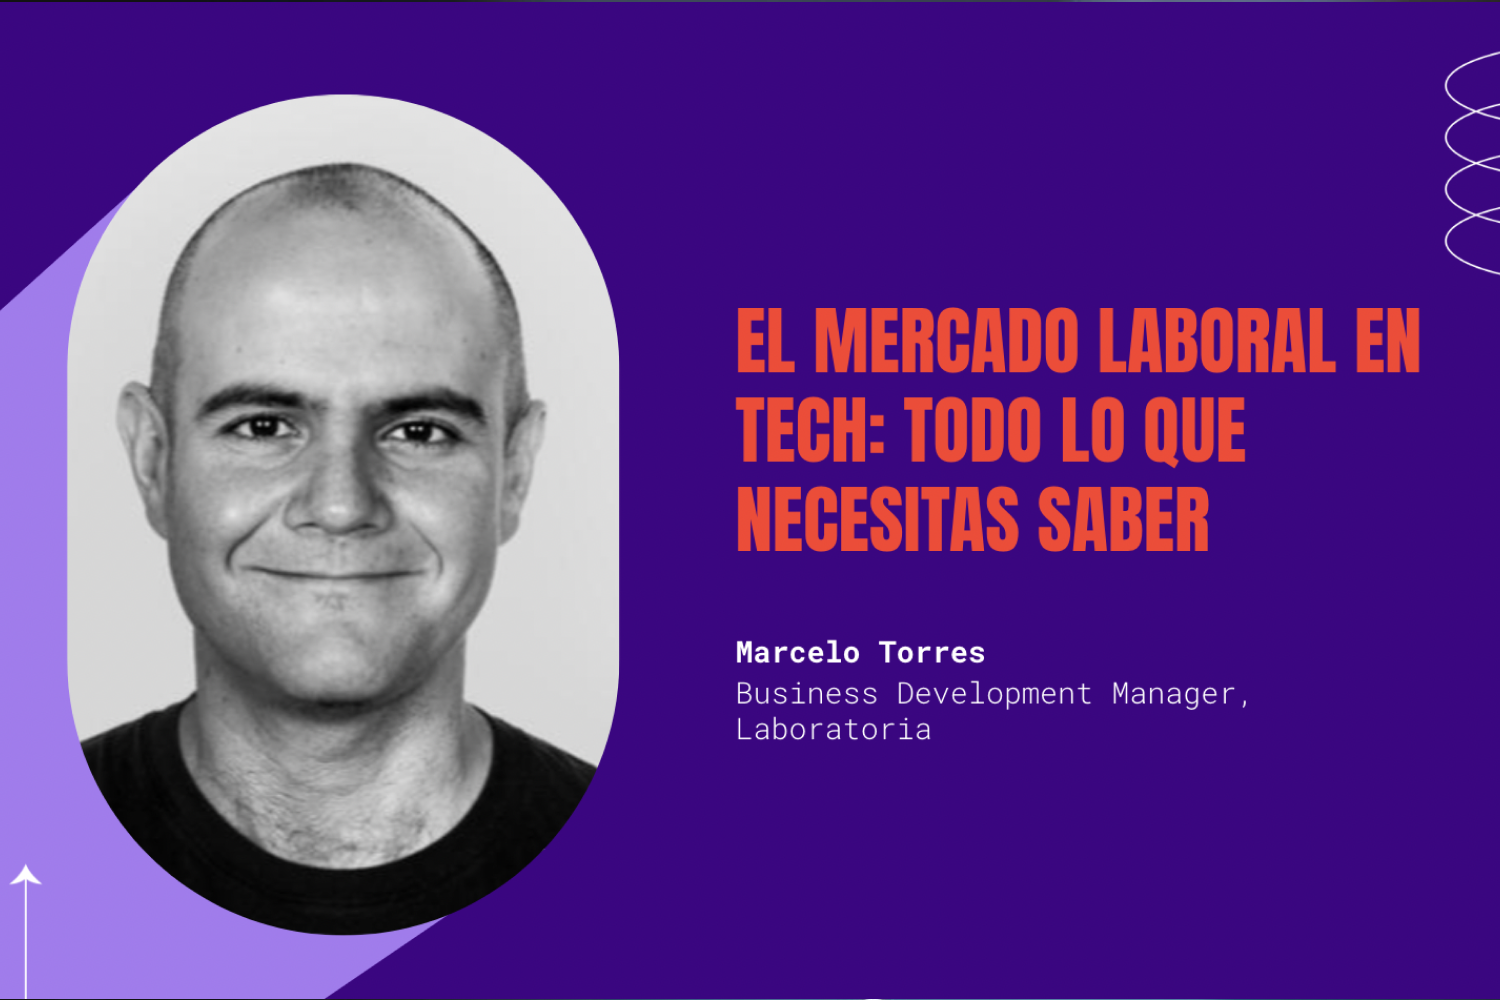 En el encuentro de abril de Código M, nos acompañó Marcelo Torres, Business Development Manager de Laboratoria, quien nos presentó cómo es el mercado laboral en tech en Latinoamérica.